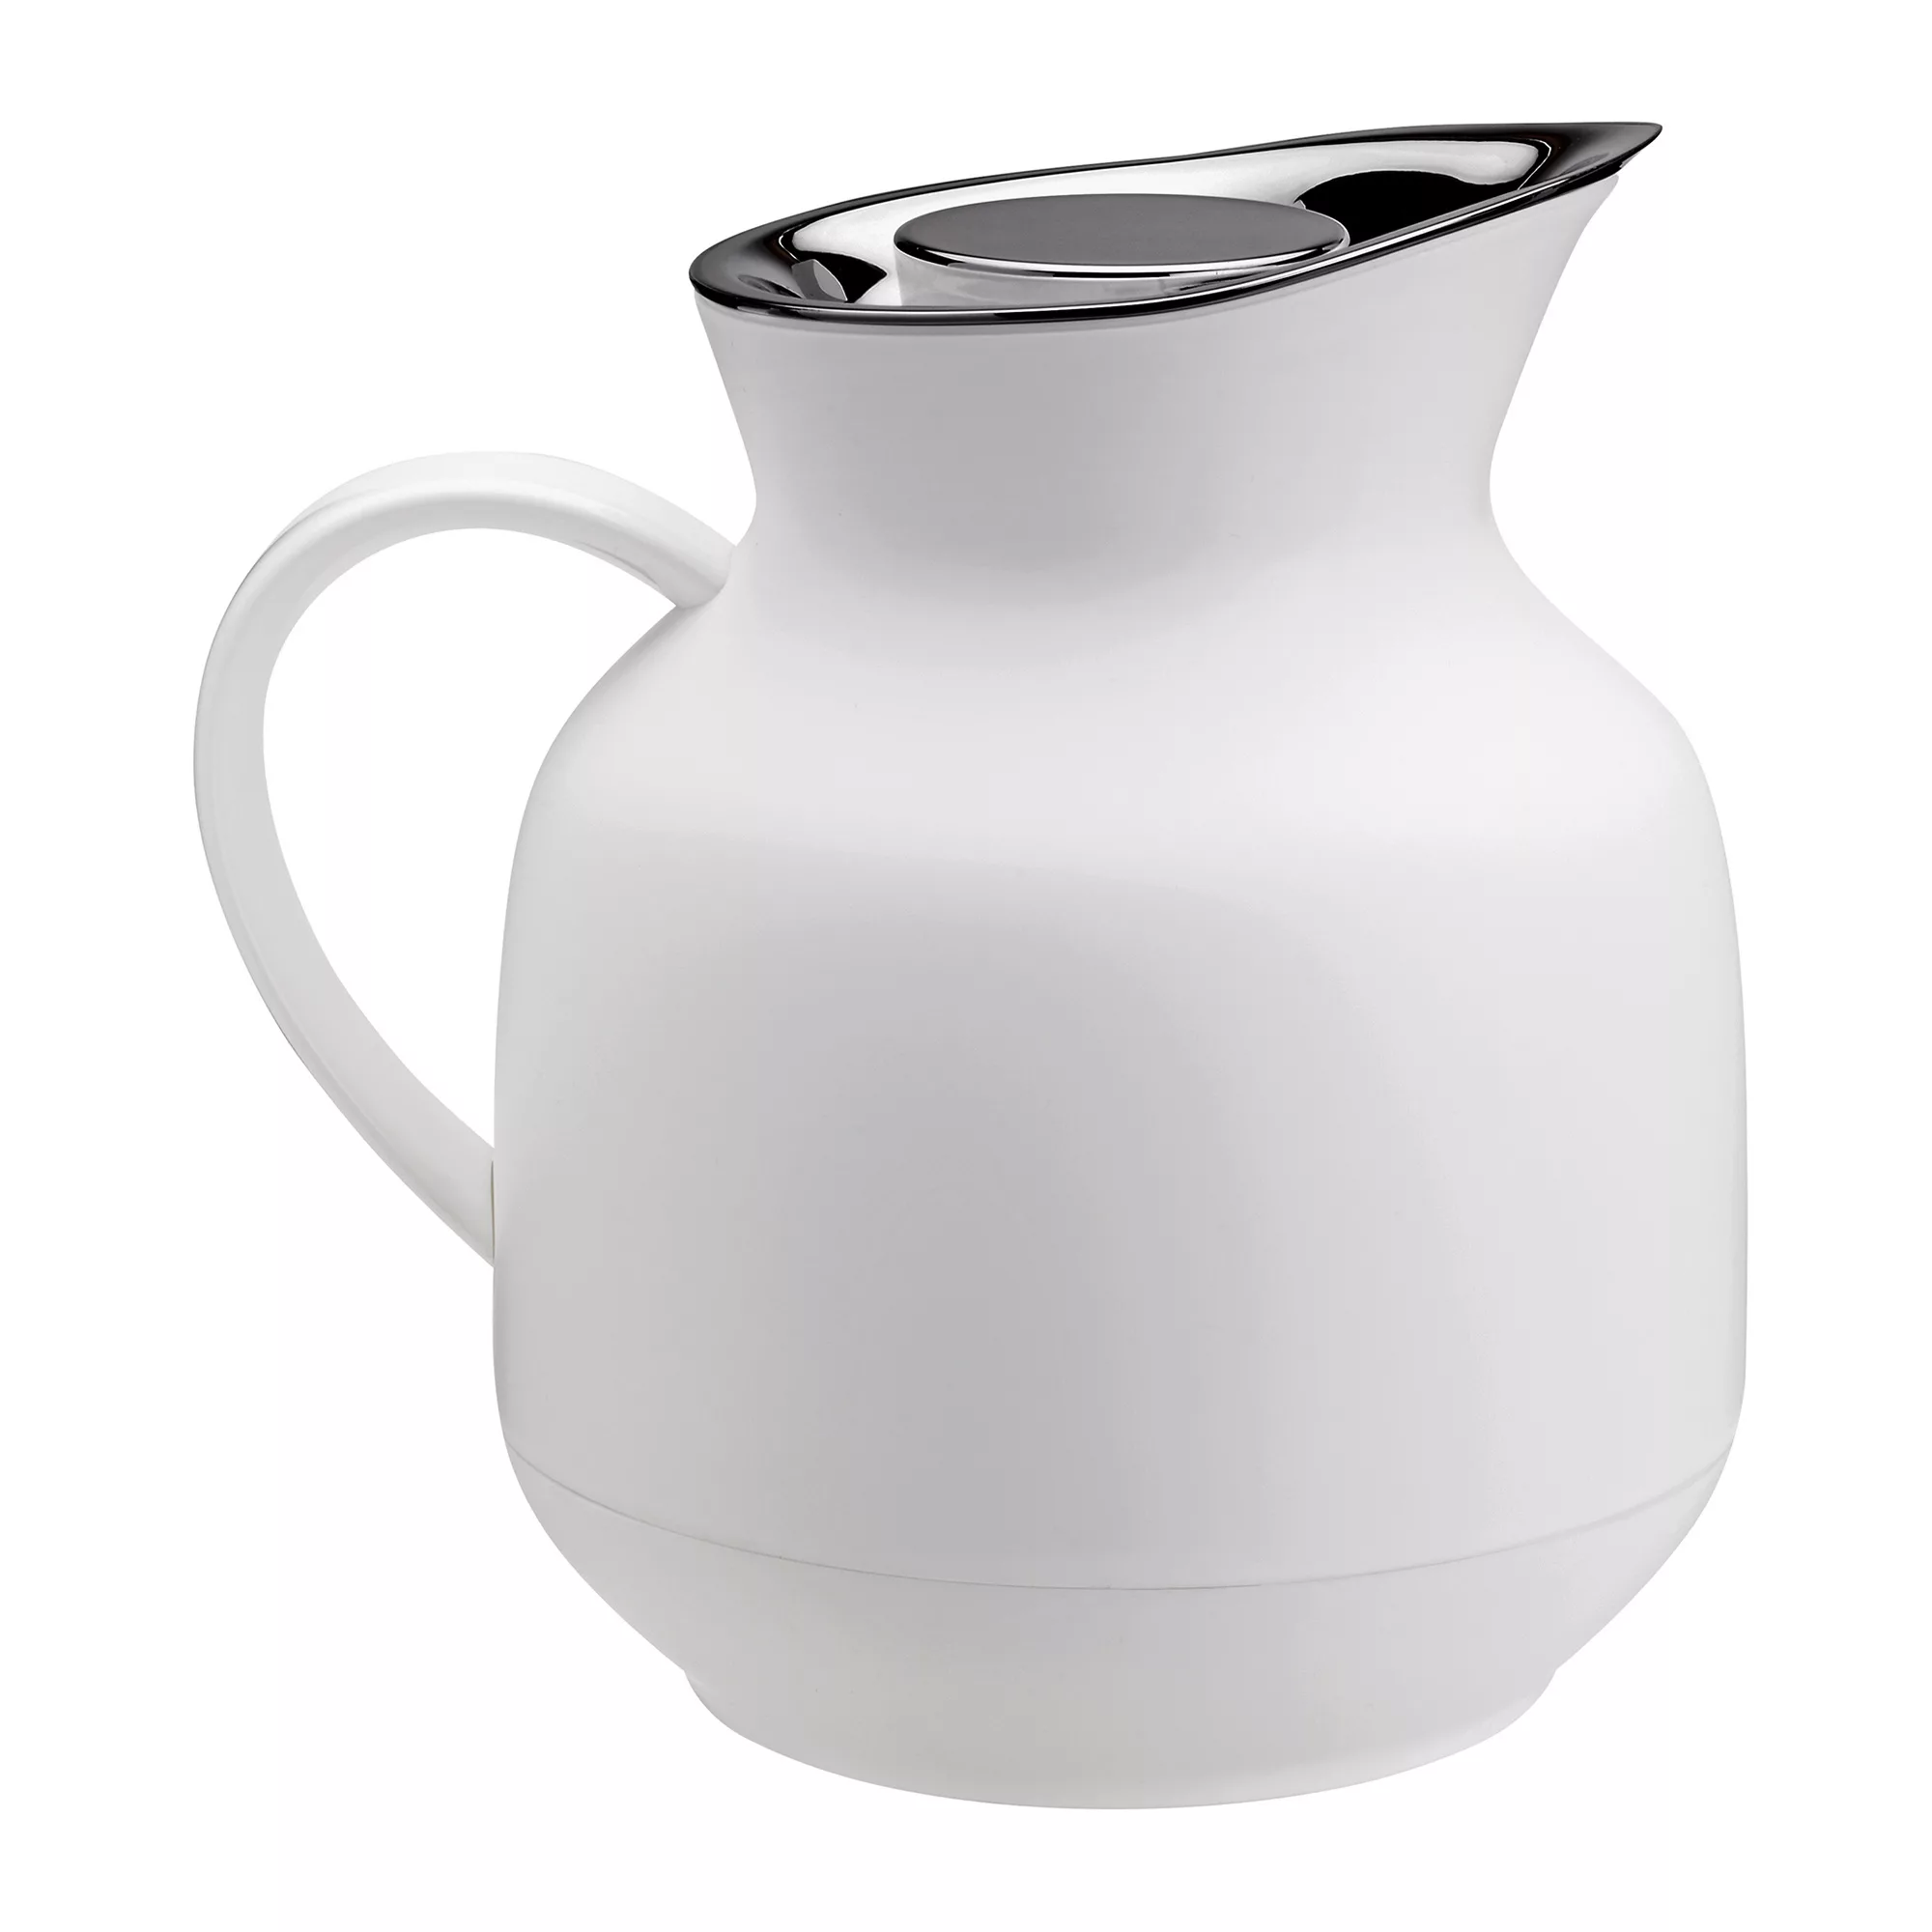 Stelton - Amphora Teeisolierkanne 1L - soft weiß/BPA- und Phthalatfrei/LxBx günstig online kaufen